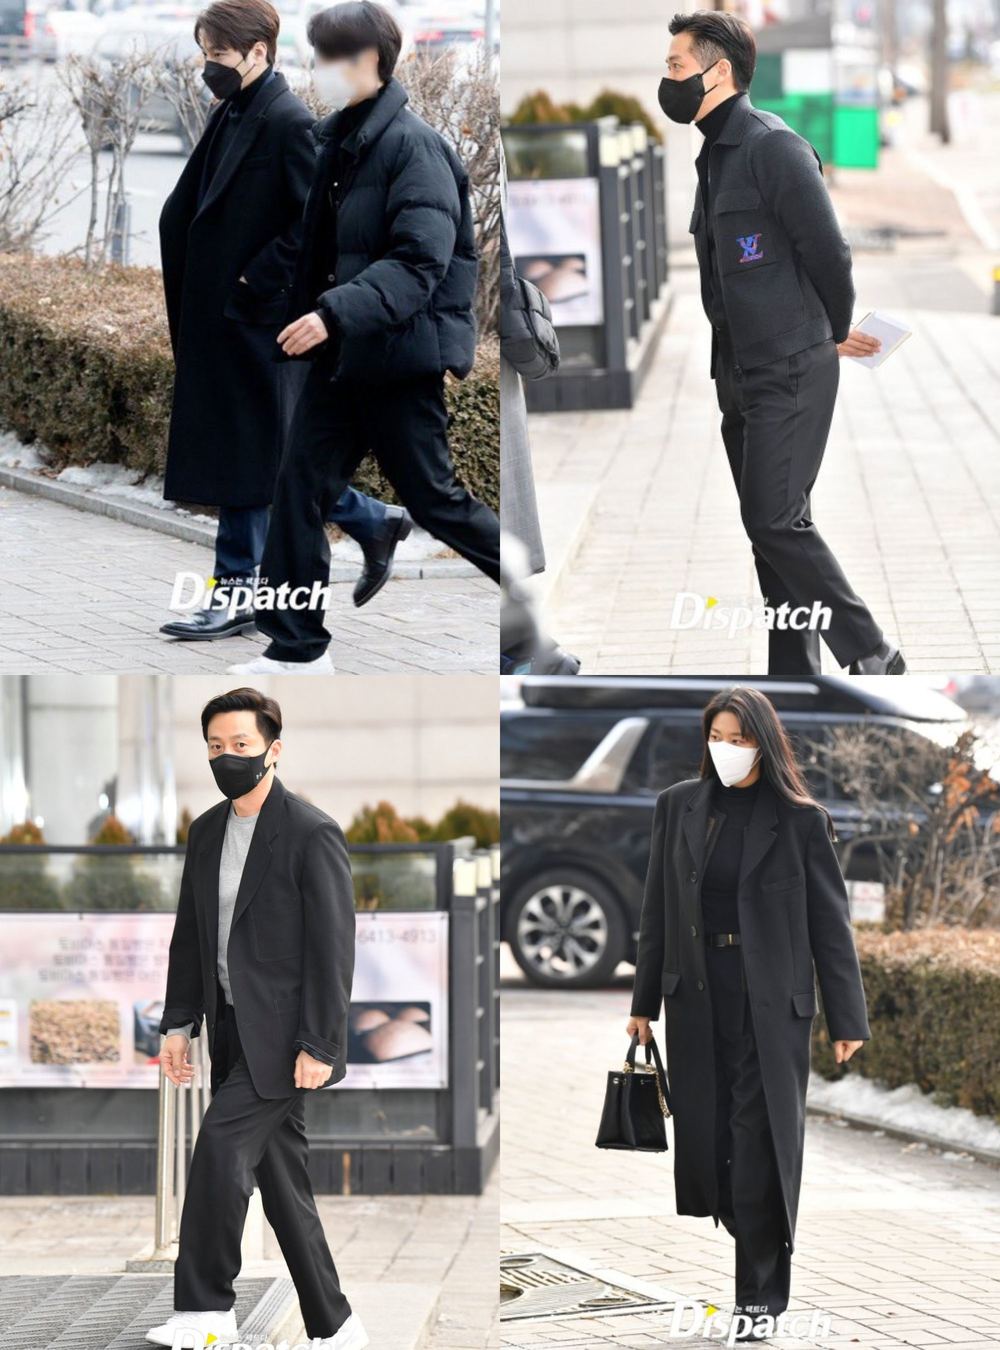  
Hầu hết các ngôi sao có mặt tại đám cưới của Park Shin Hye và Choi Tae Joon đều mặc đồ đen chủ đạo. (Ảnh: Dispatch)